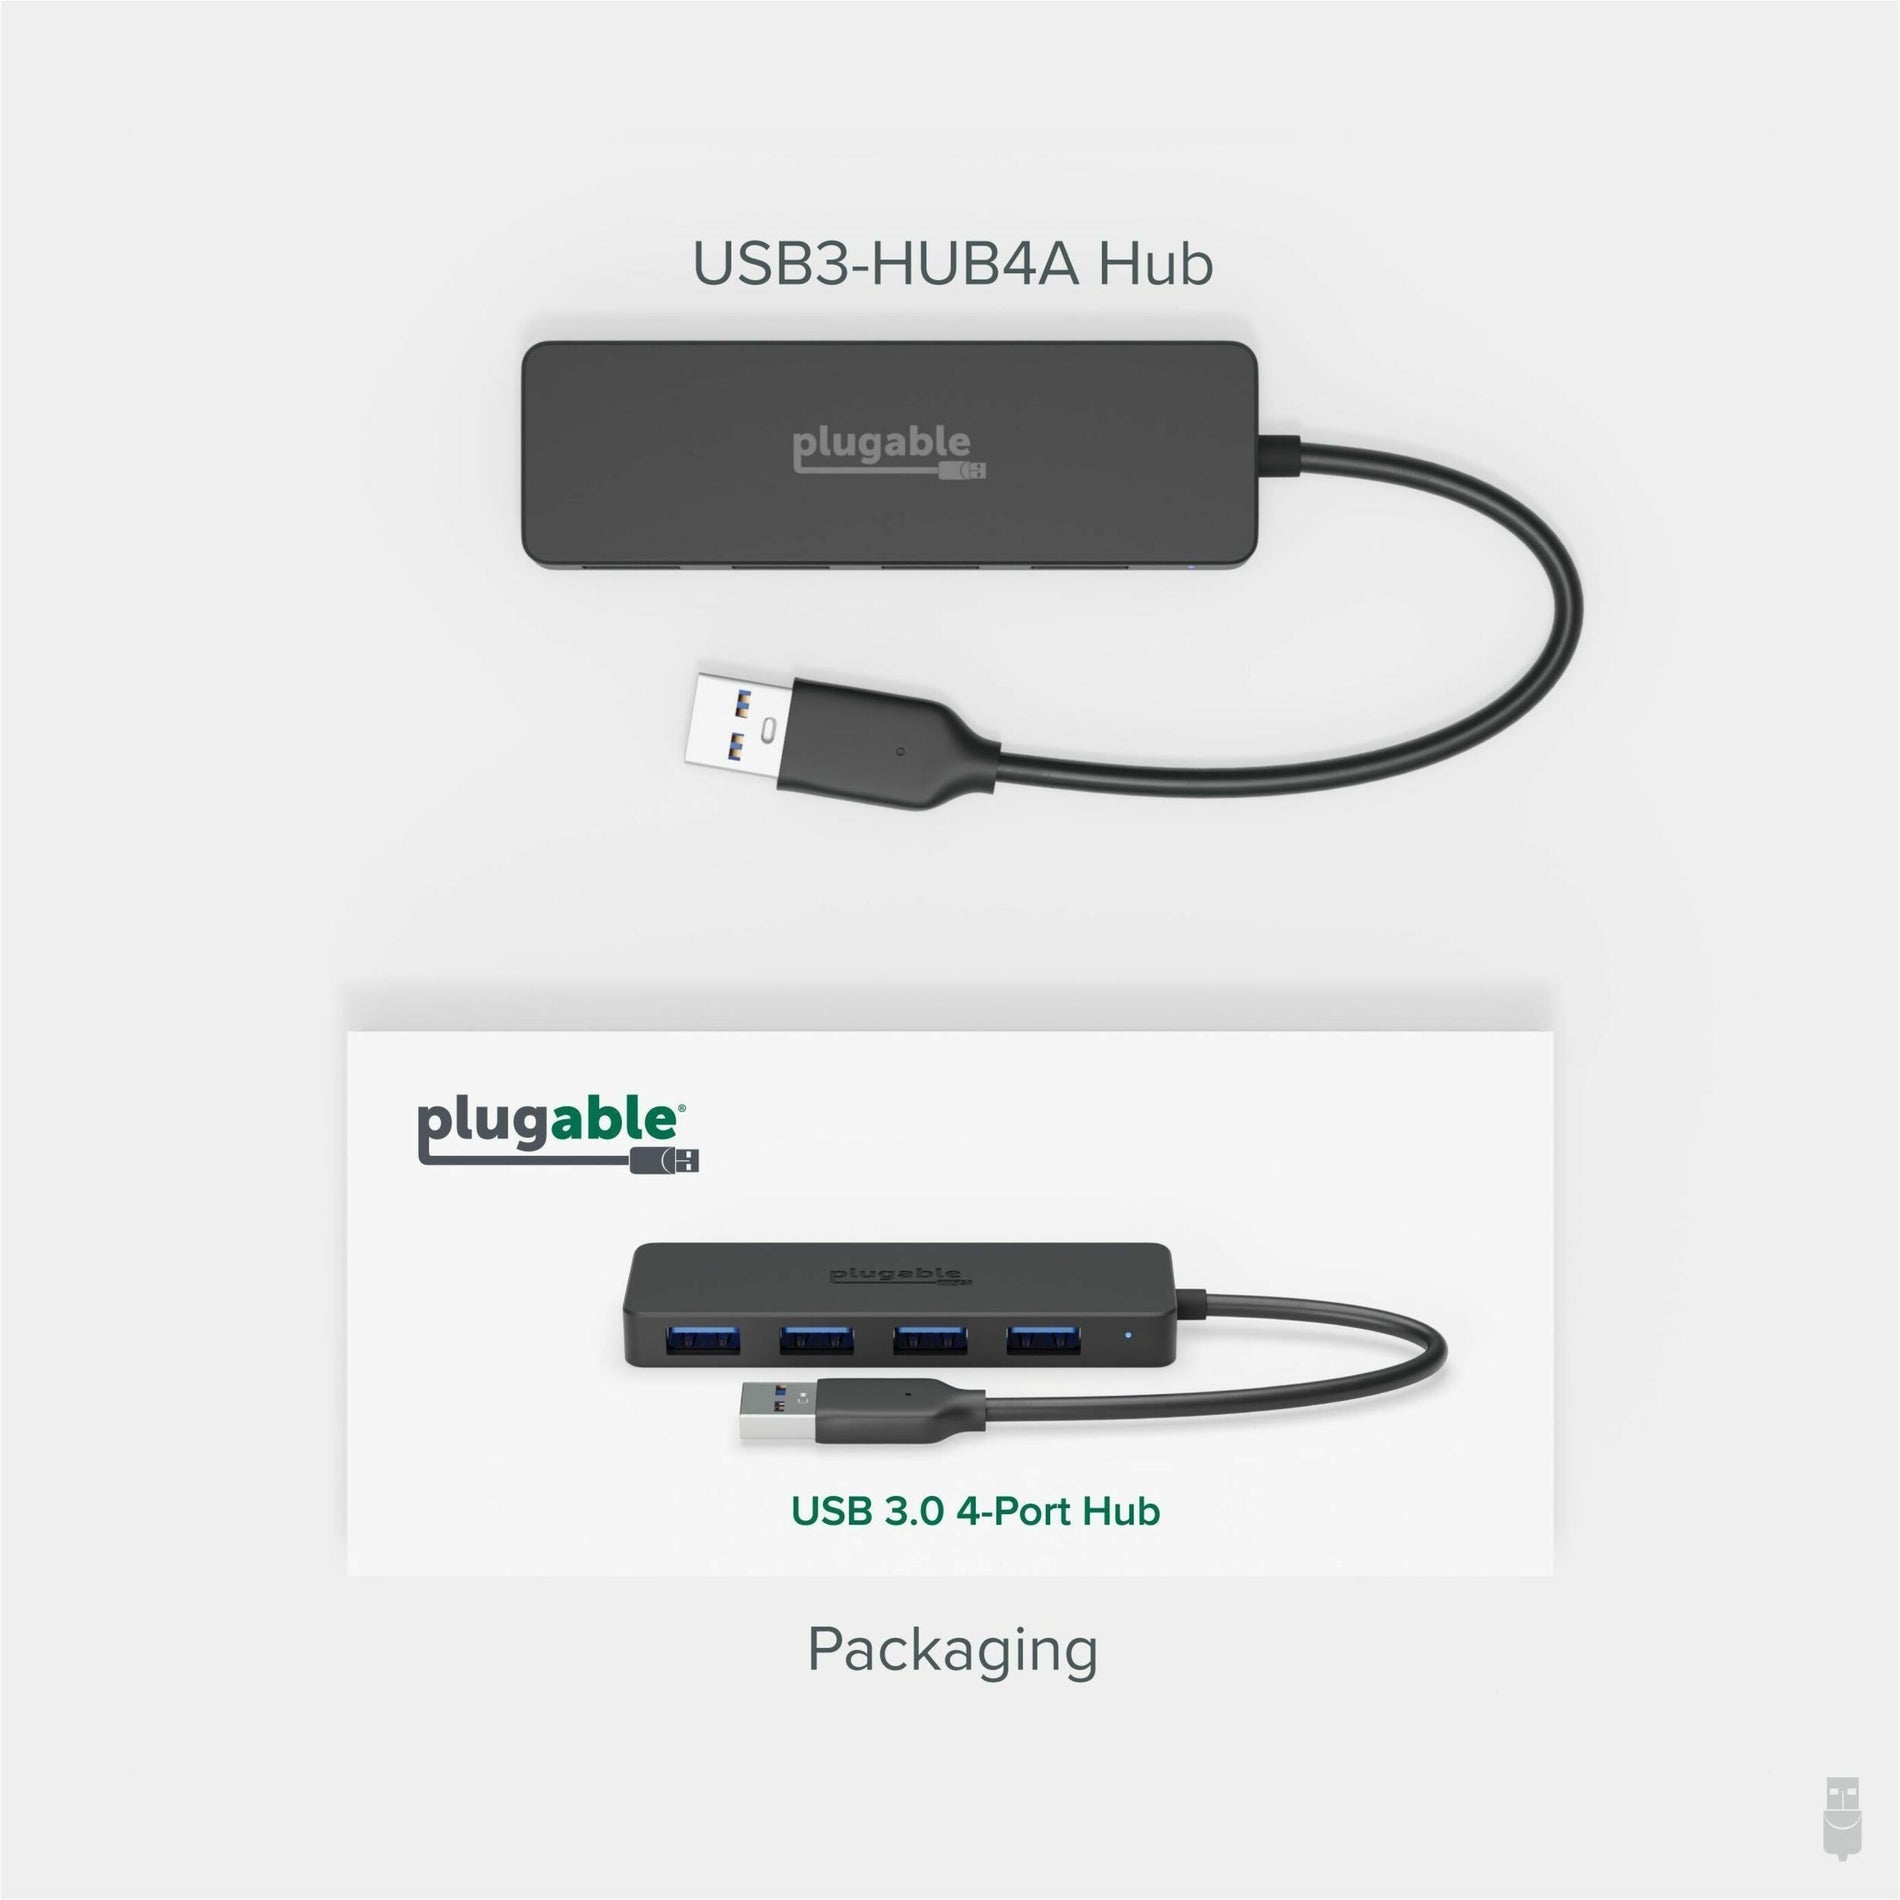 Plugable USB3-HUB4A USB Hub, 4 Port USB Splitter for Laptop, USB 3.0